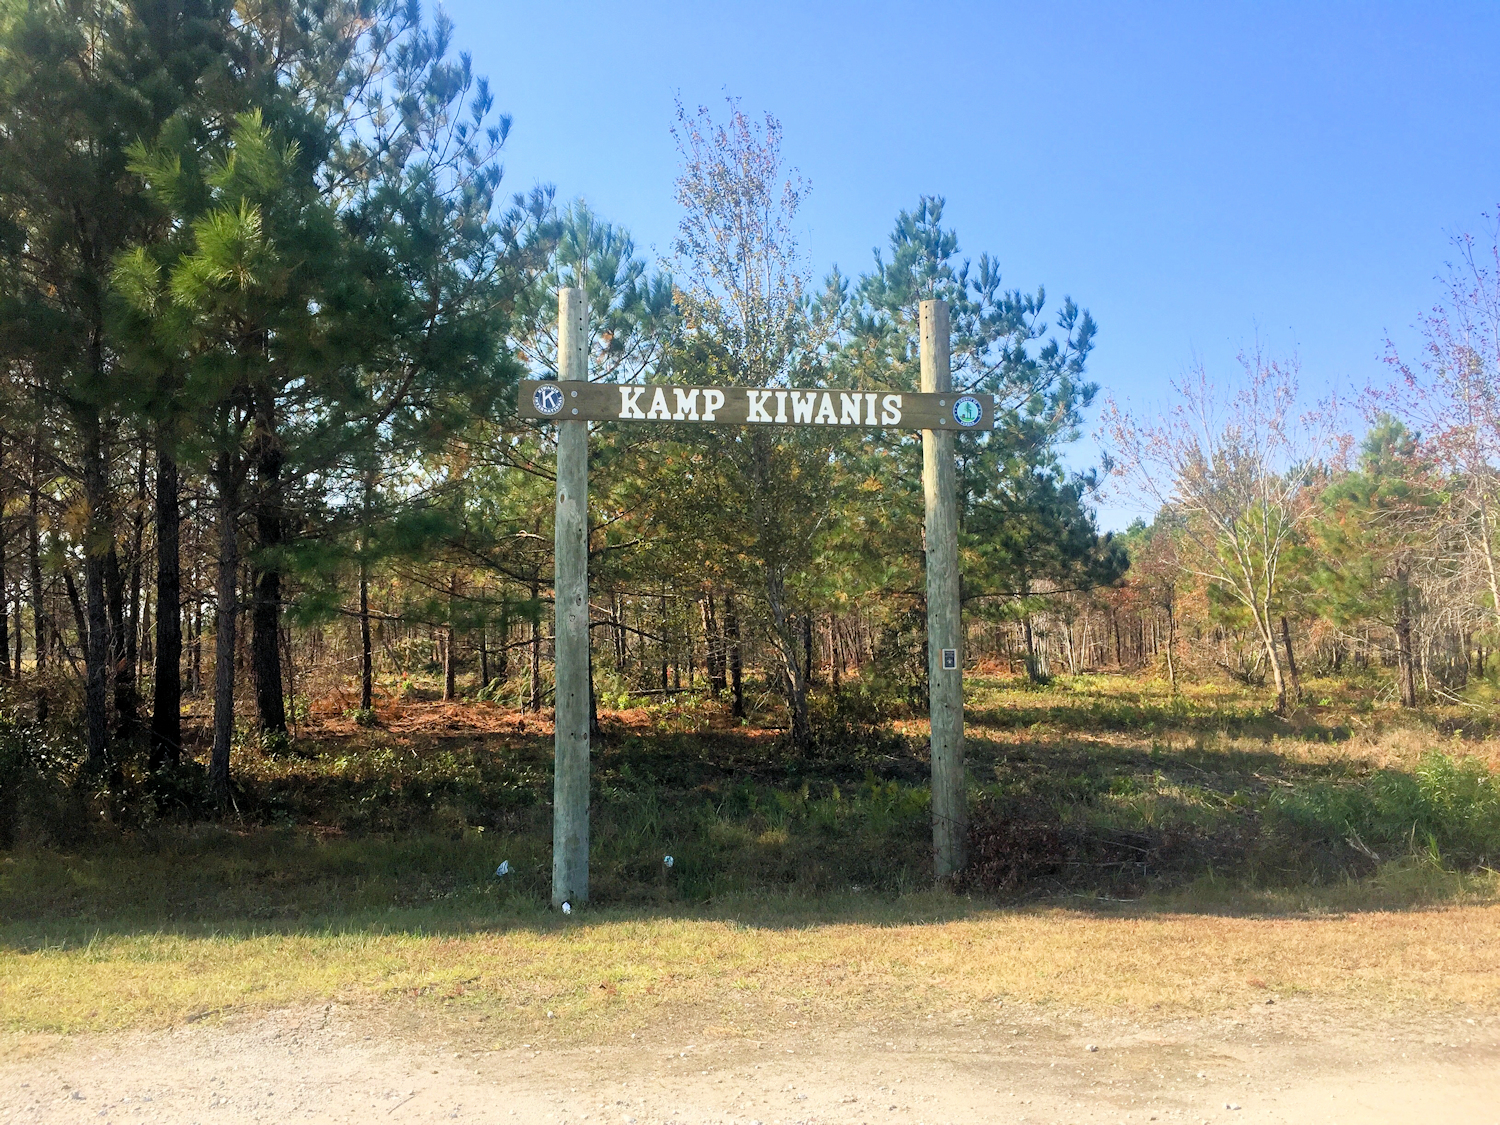 kiwanis-park-kamp-kiwanis-sign-sm